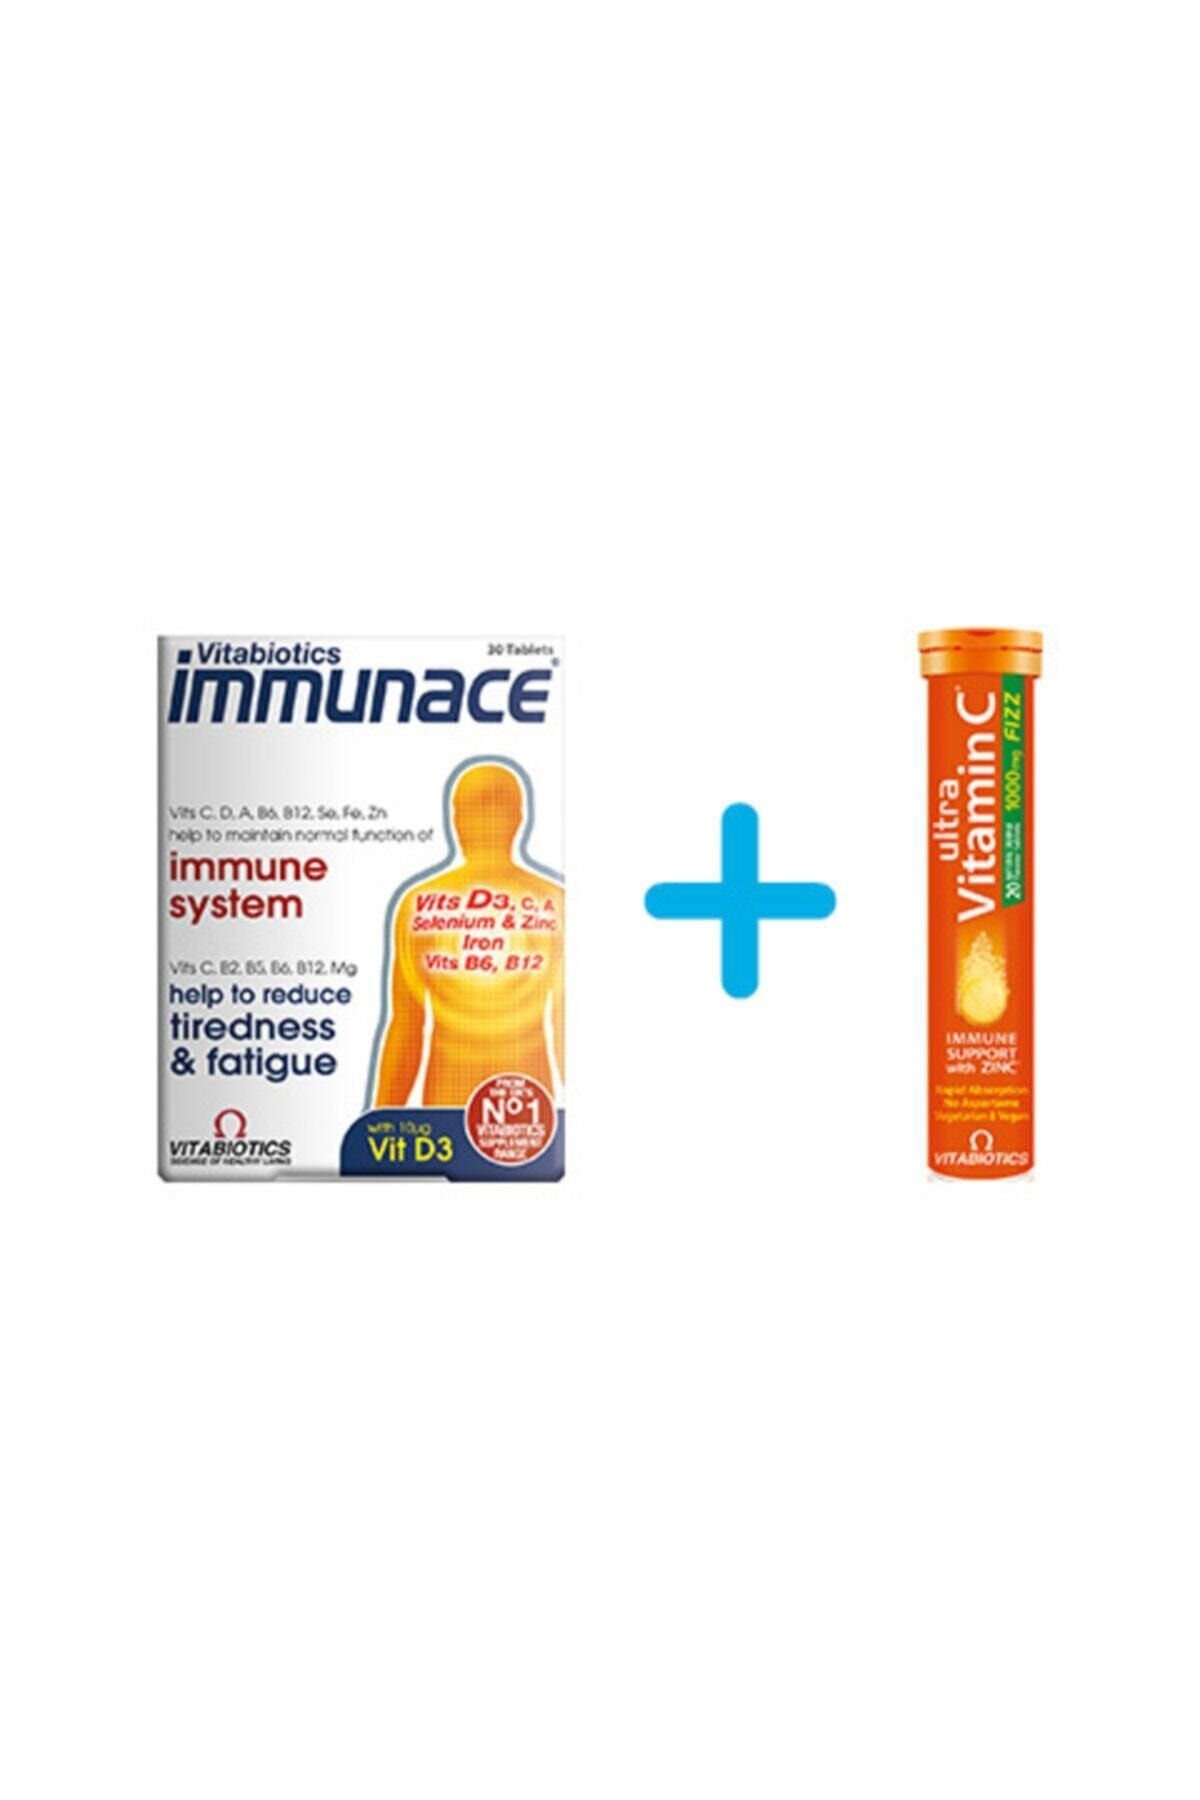 Immunace + Ultra C